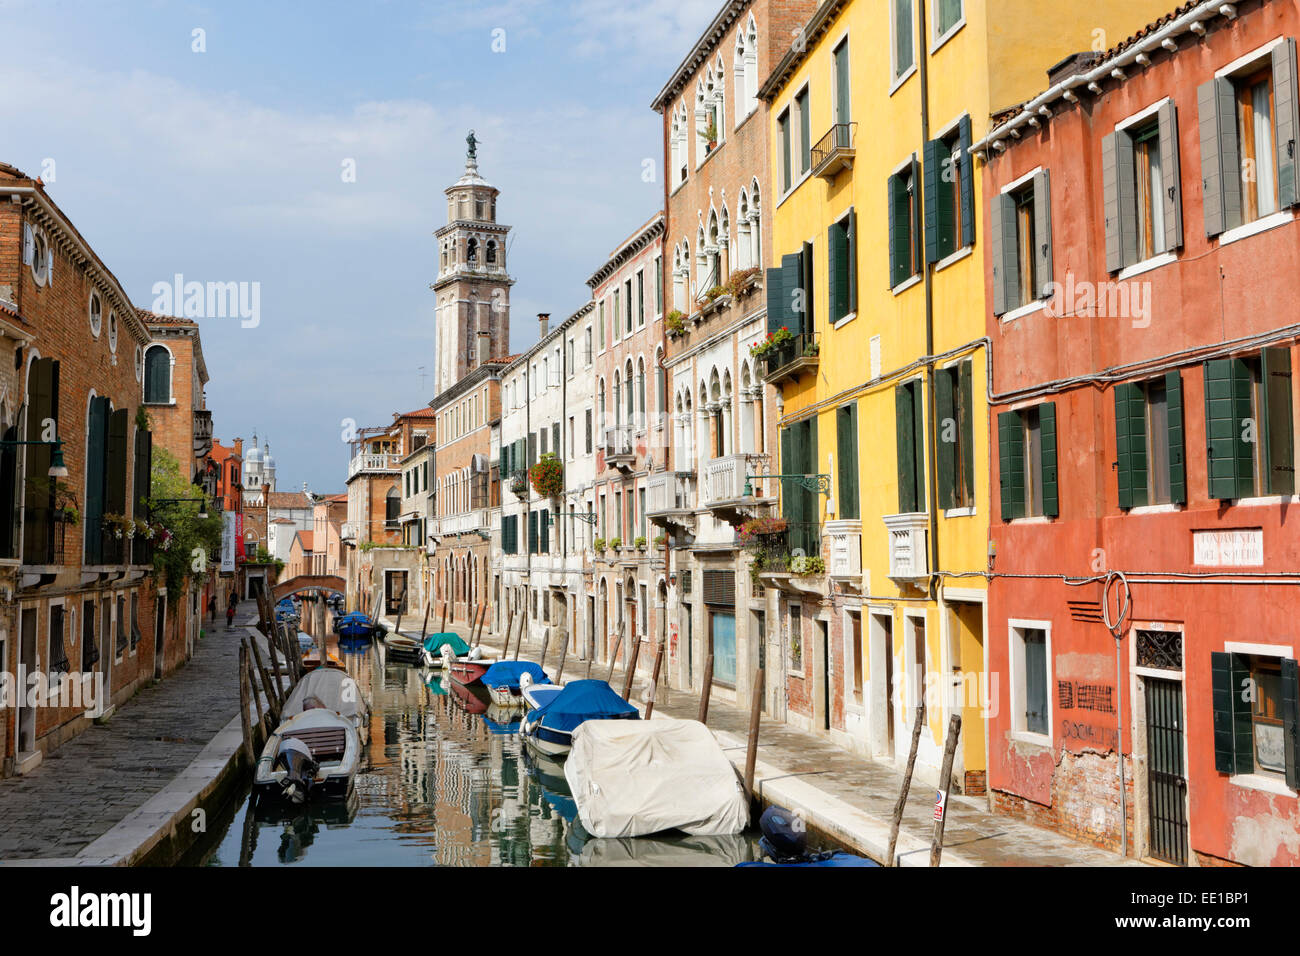 San Barnaba canal, Dorsoduro district, Venice, Veneto Region, Italy Stock Photo